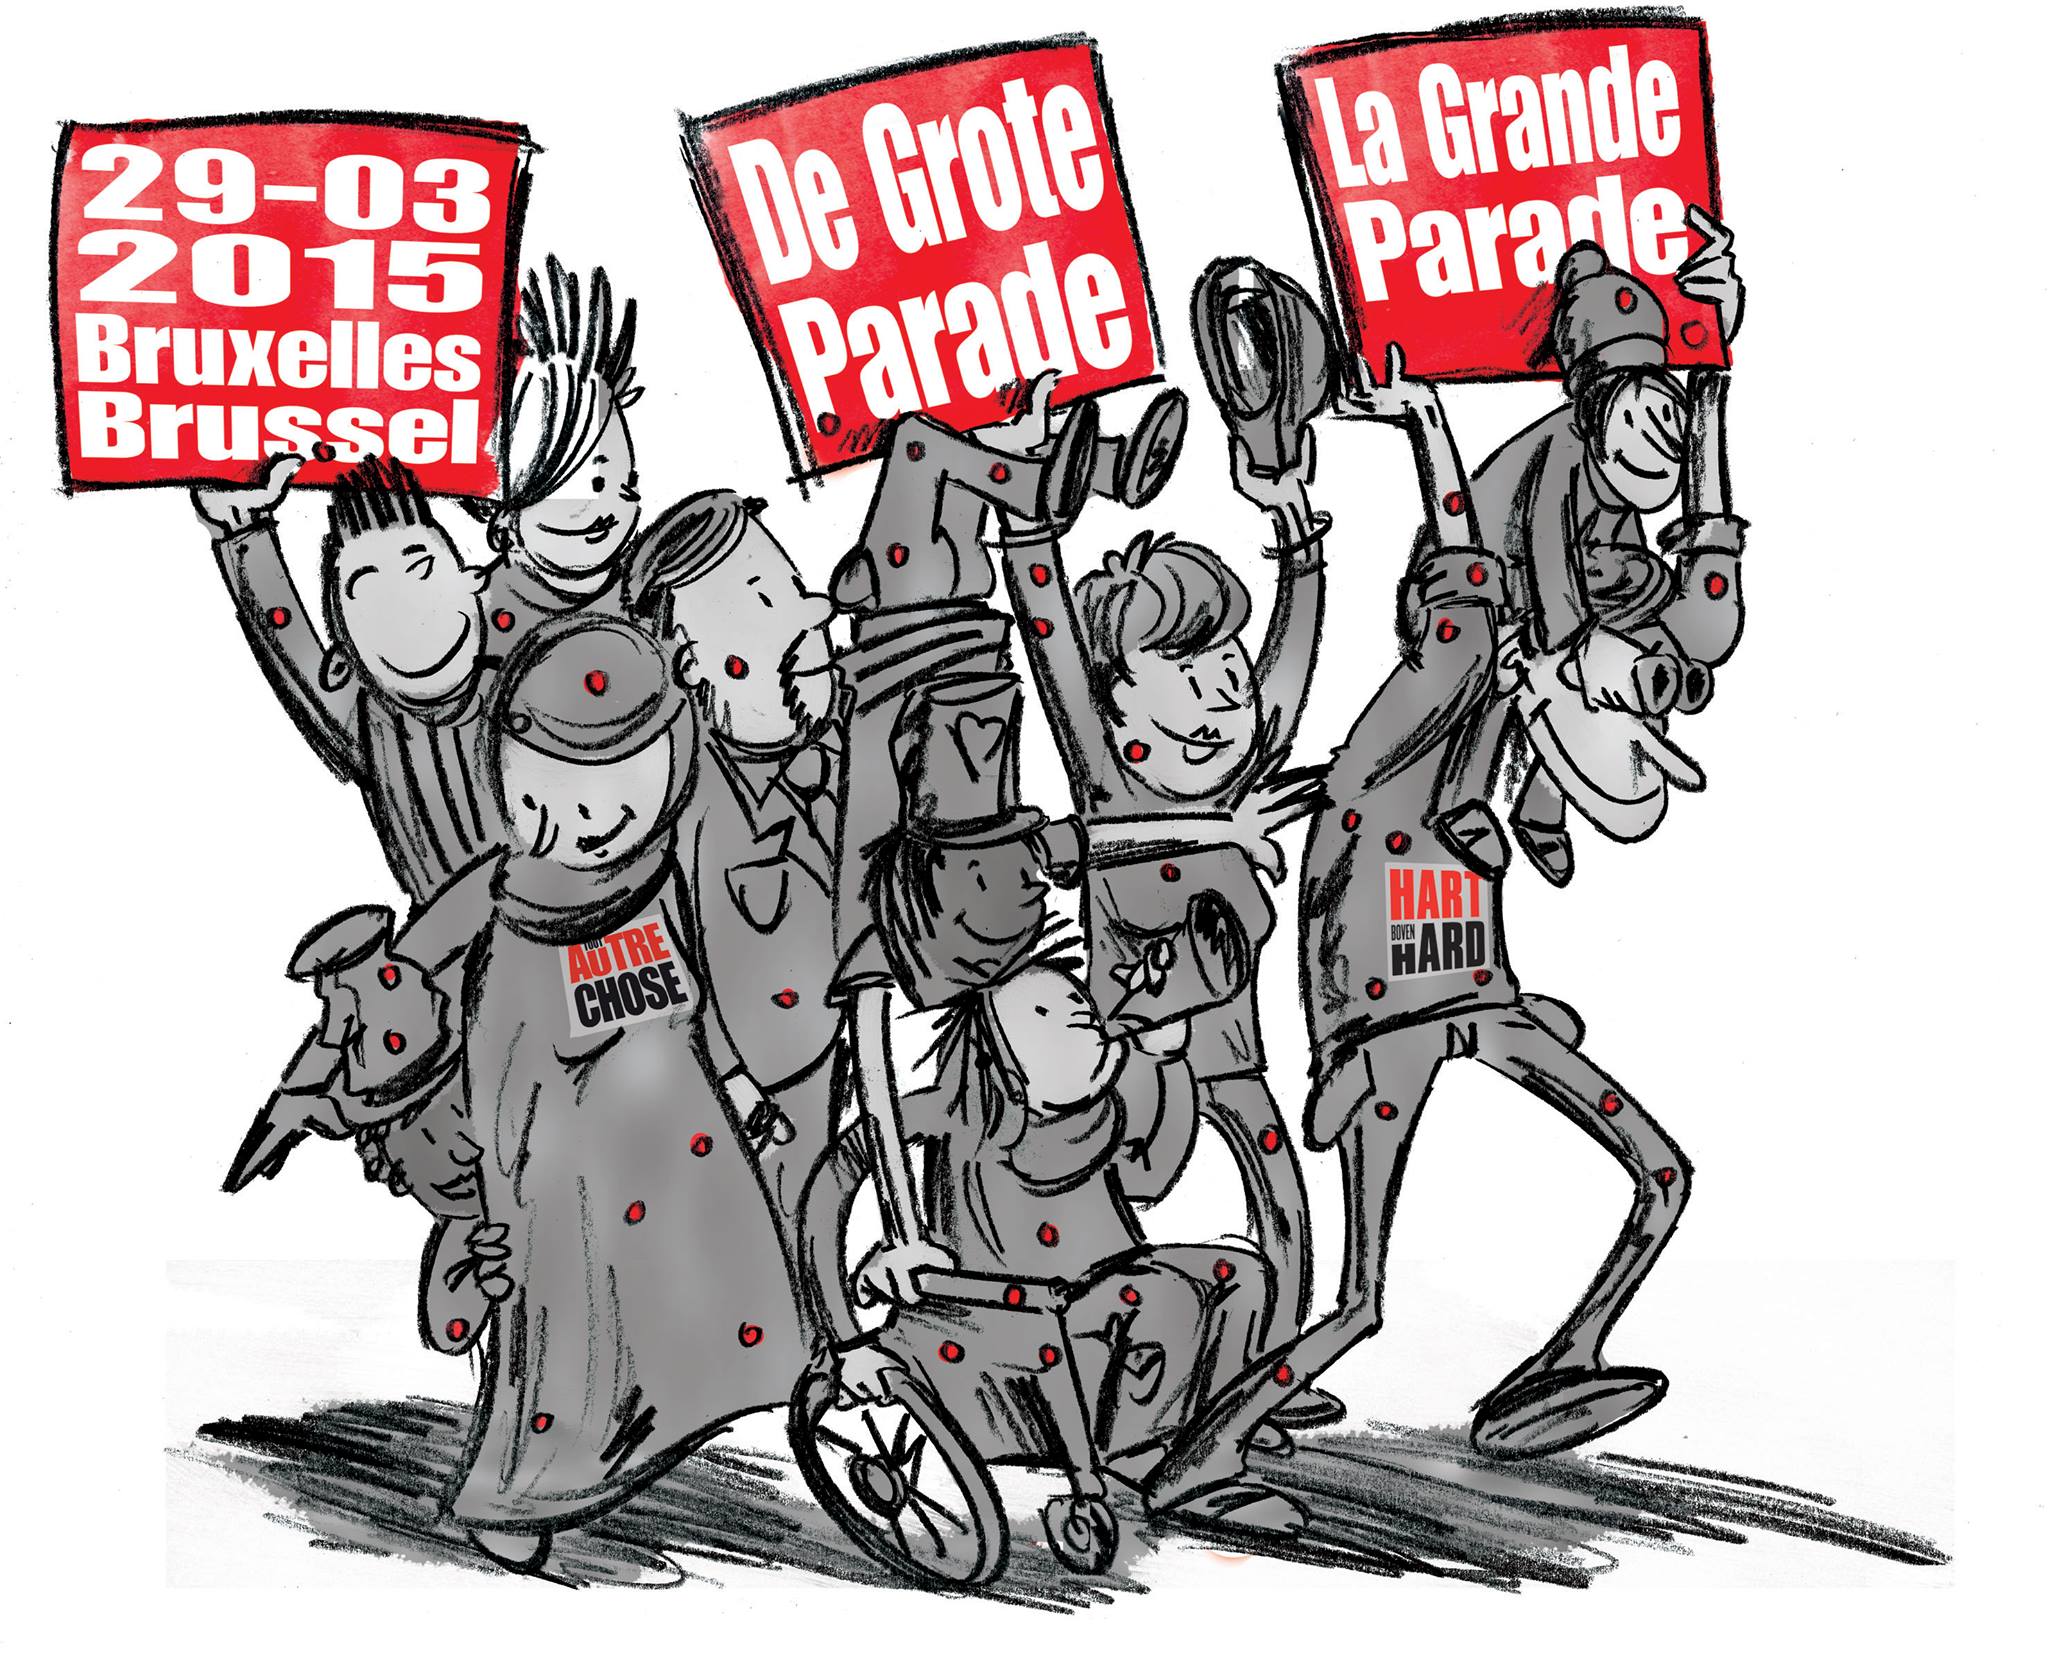 La-Grande-parade